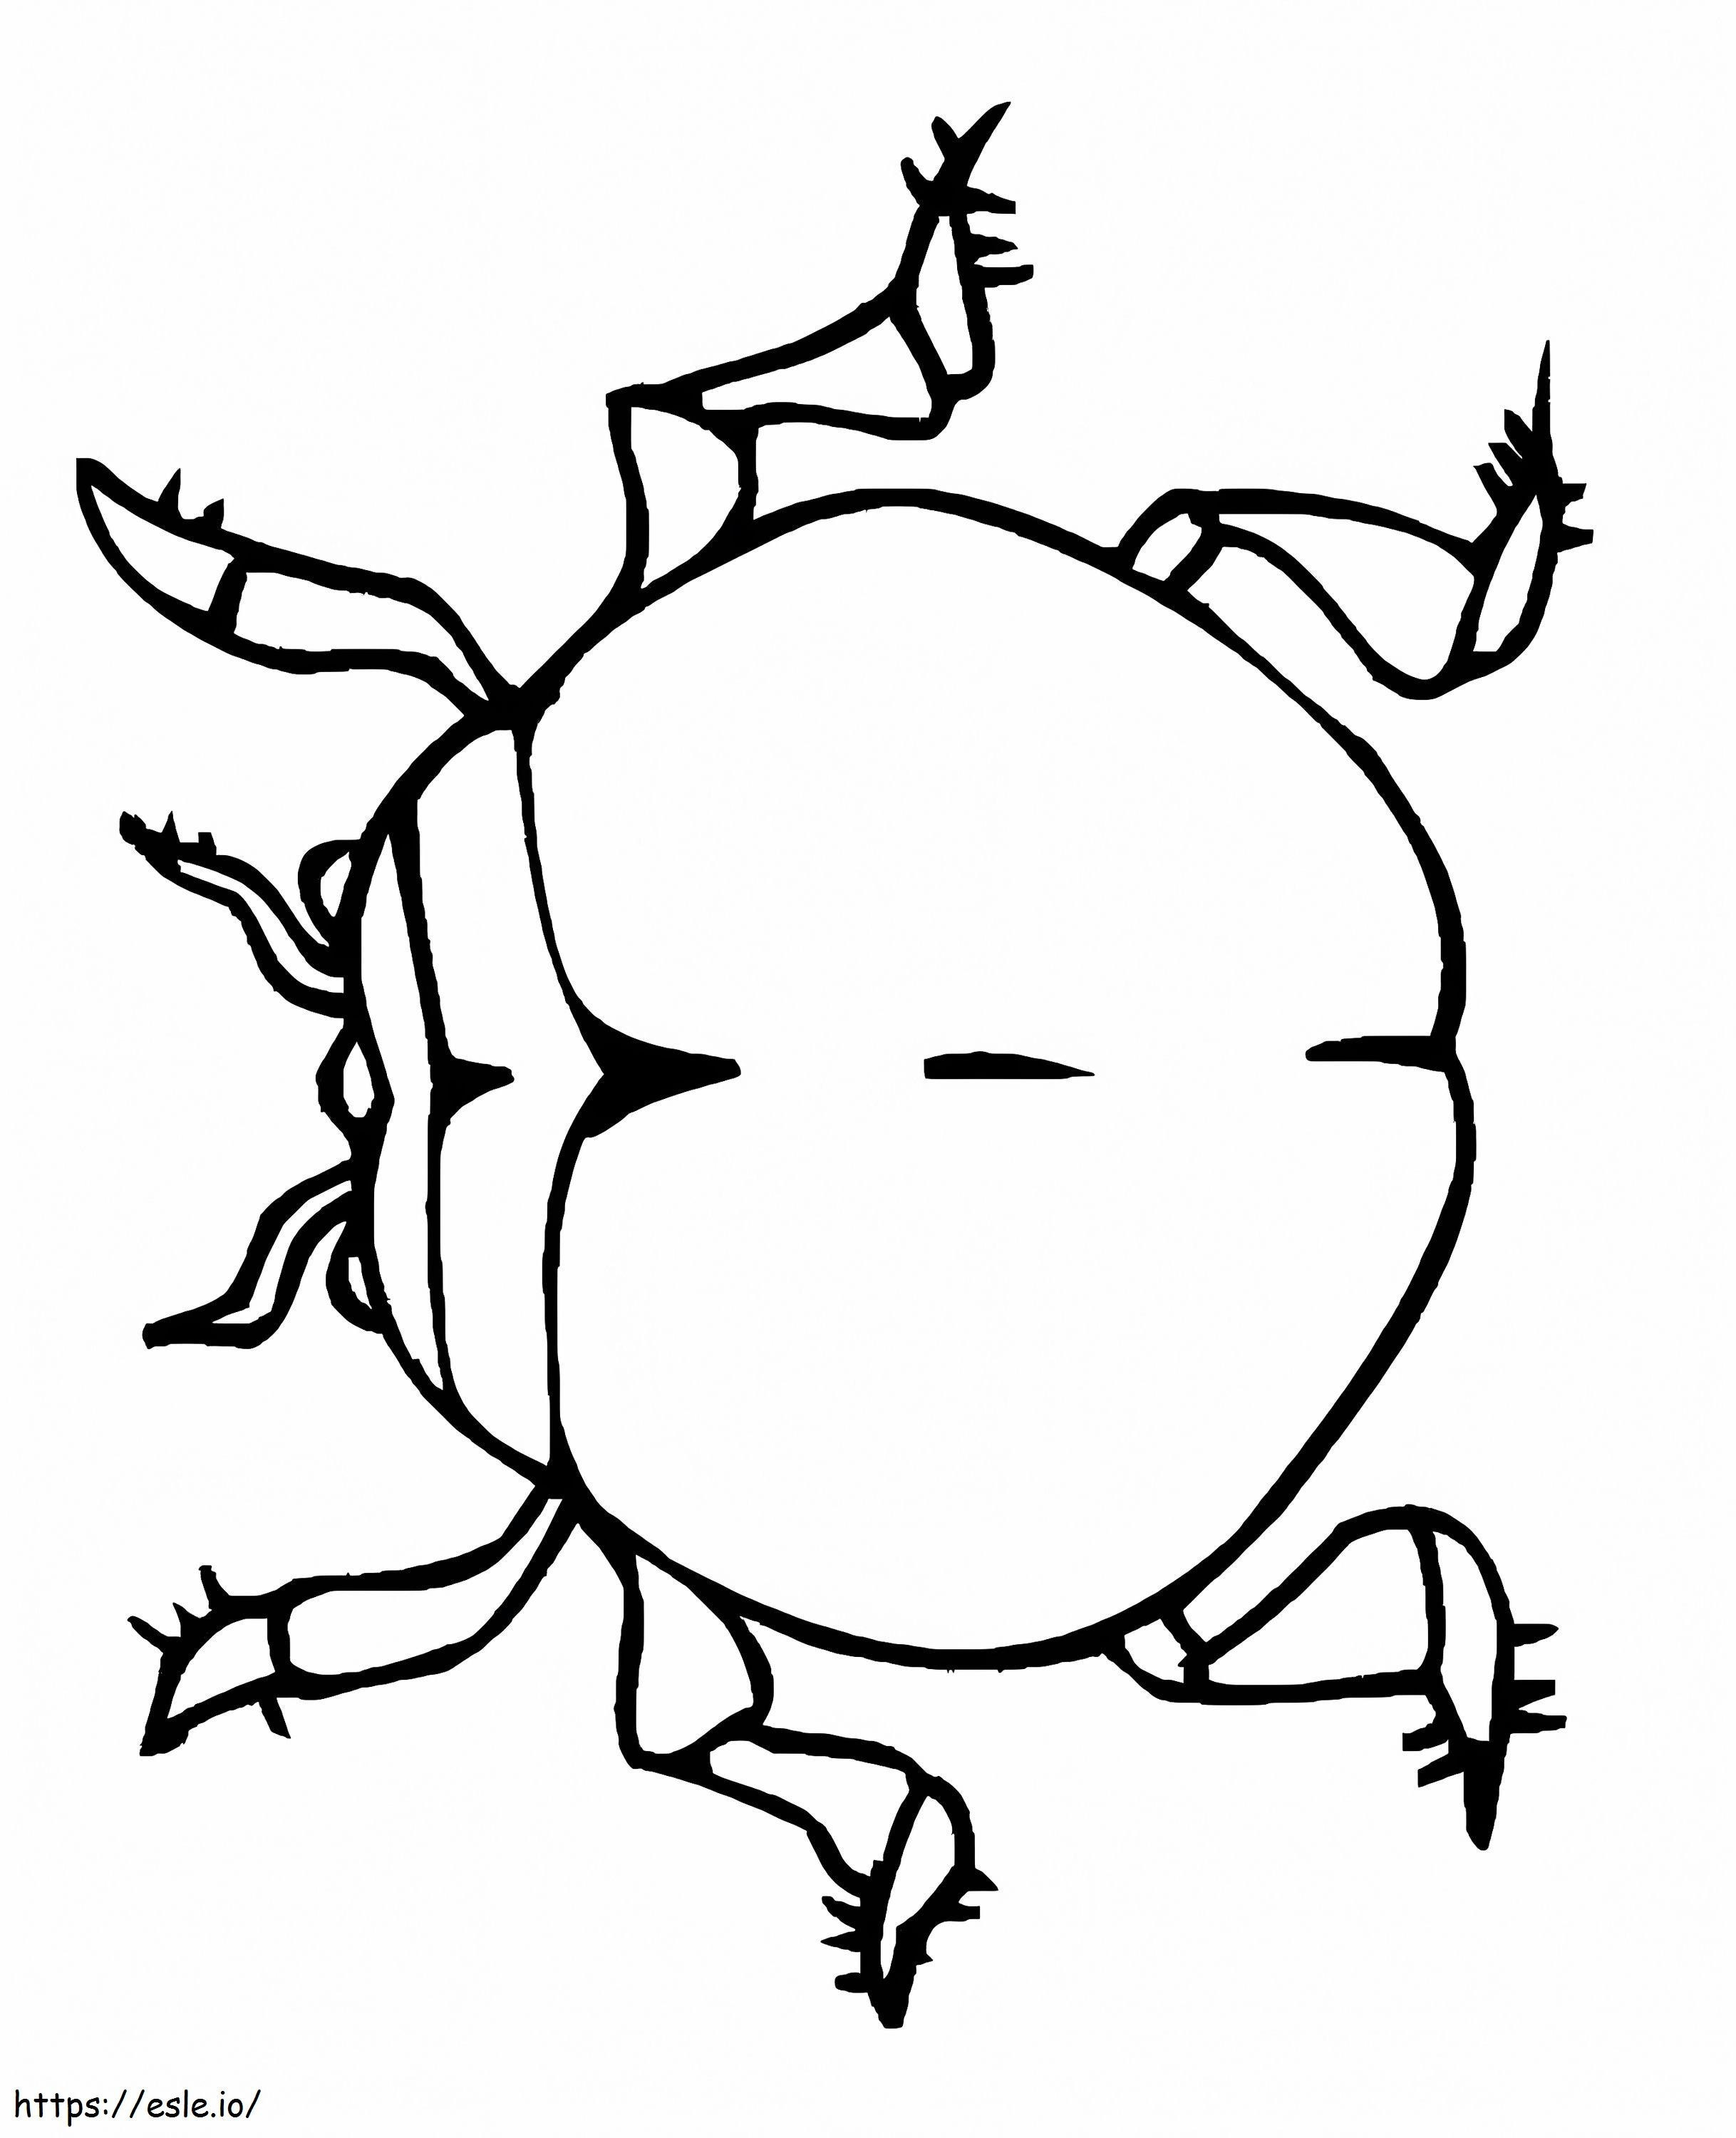 Druckbarer Käfer ausmalbilder